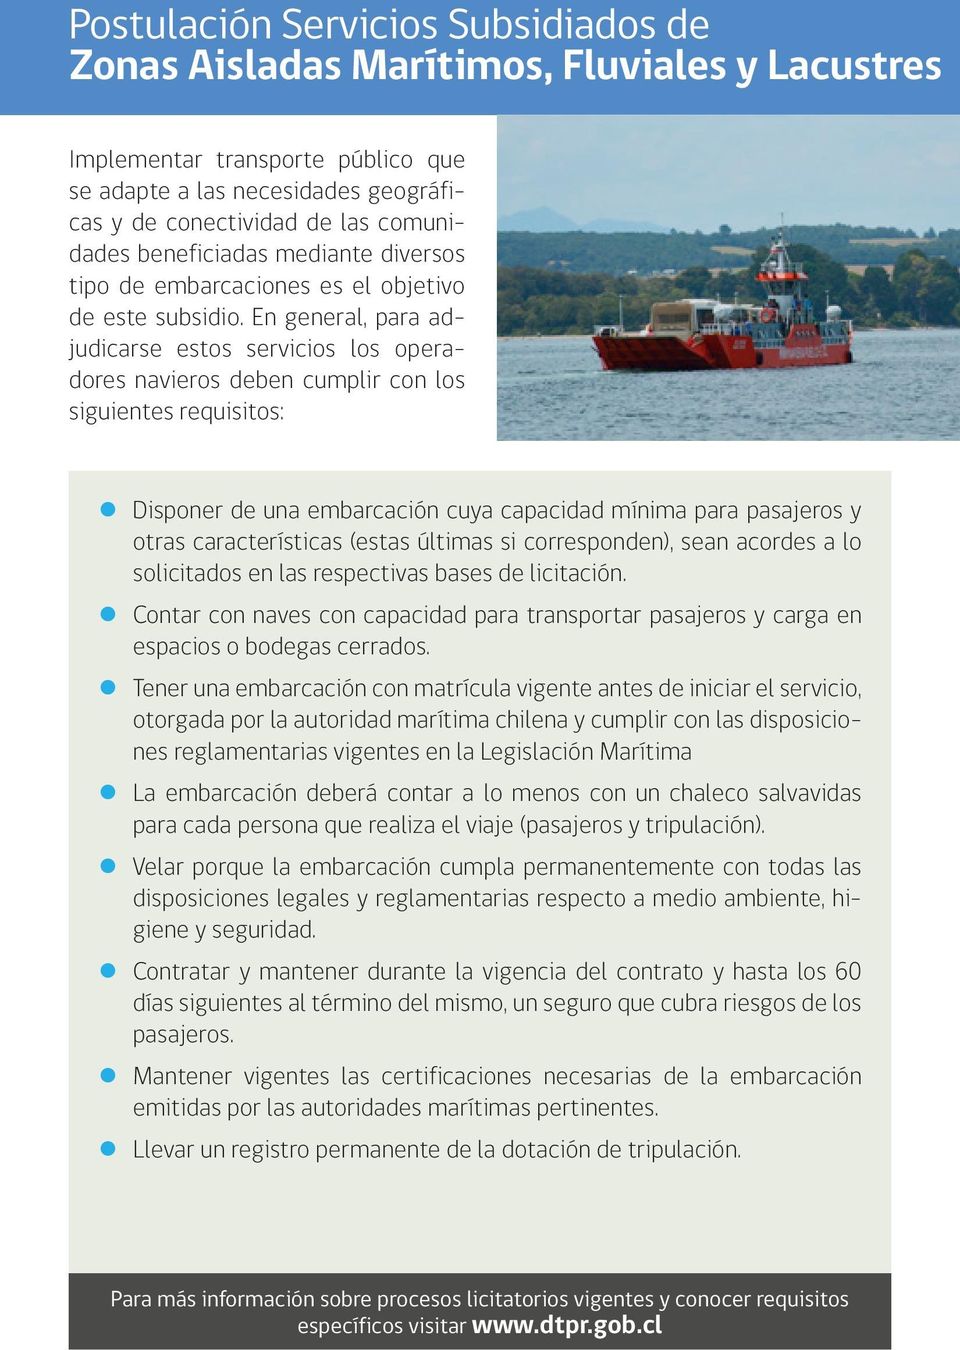 En general, para adjudicarse estos servicios los operadores navieros deben cumplir con los siguientes requisitos: Disponer de una embarcación cuya capacidad mínima para pasajeros y otras